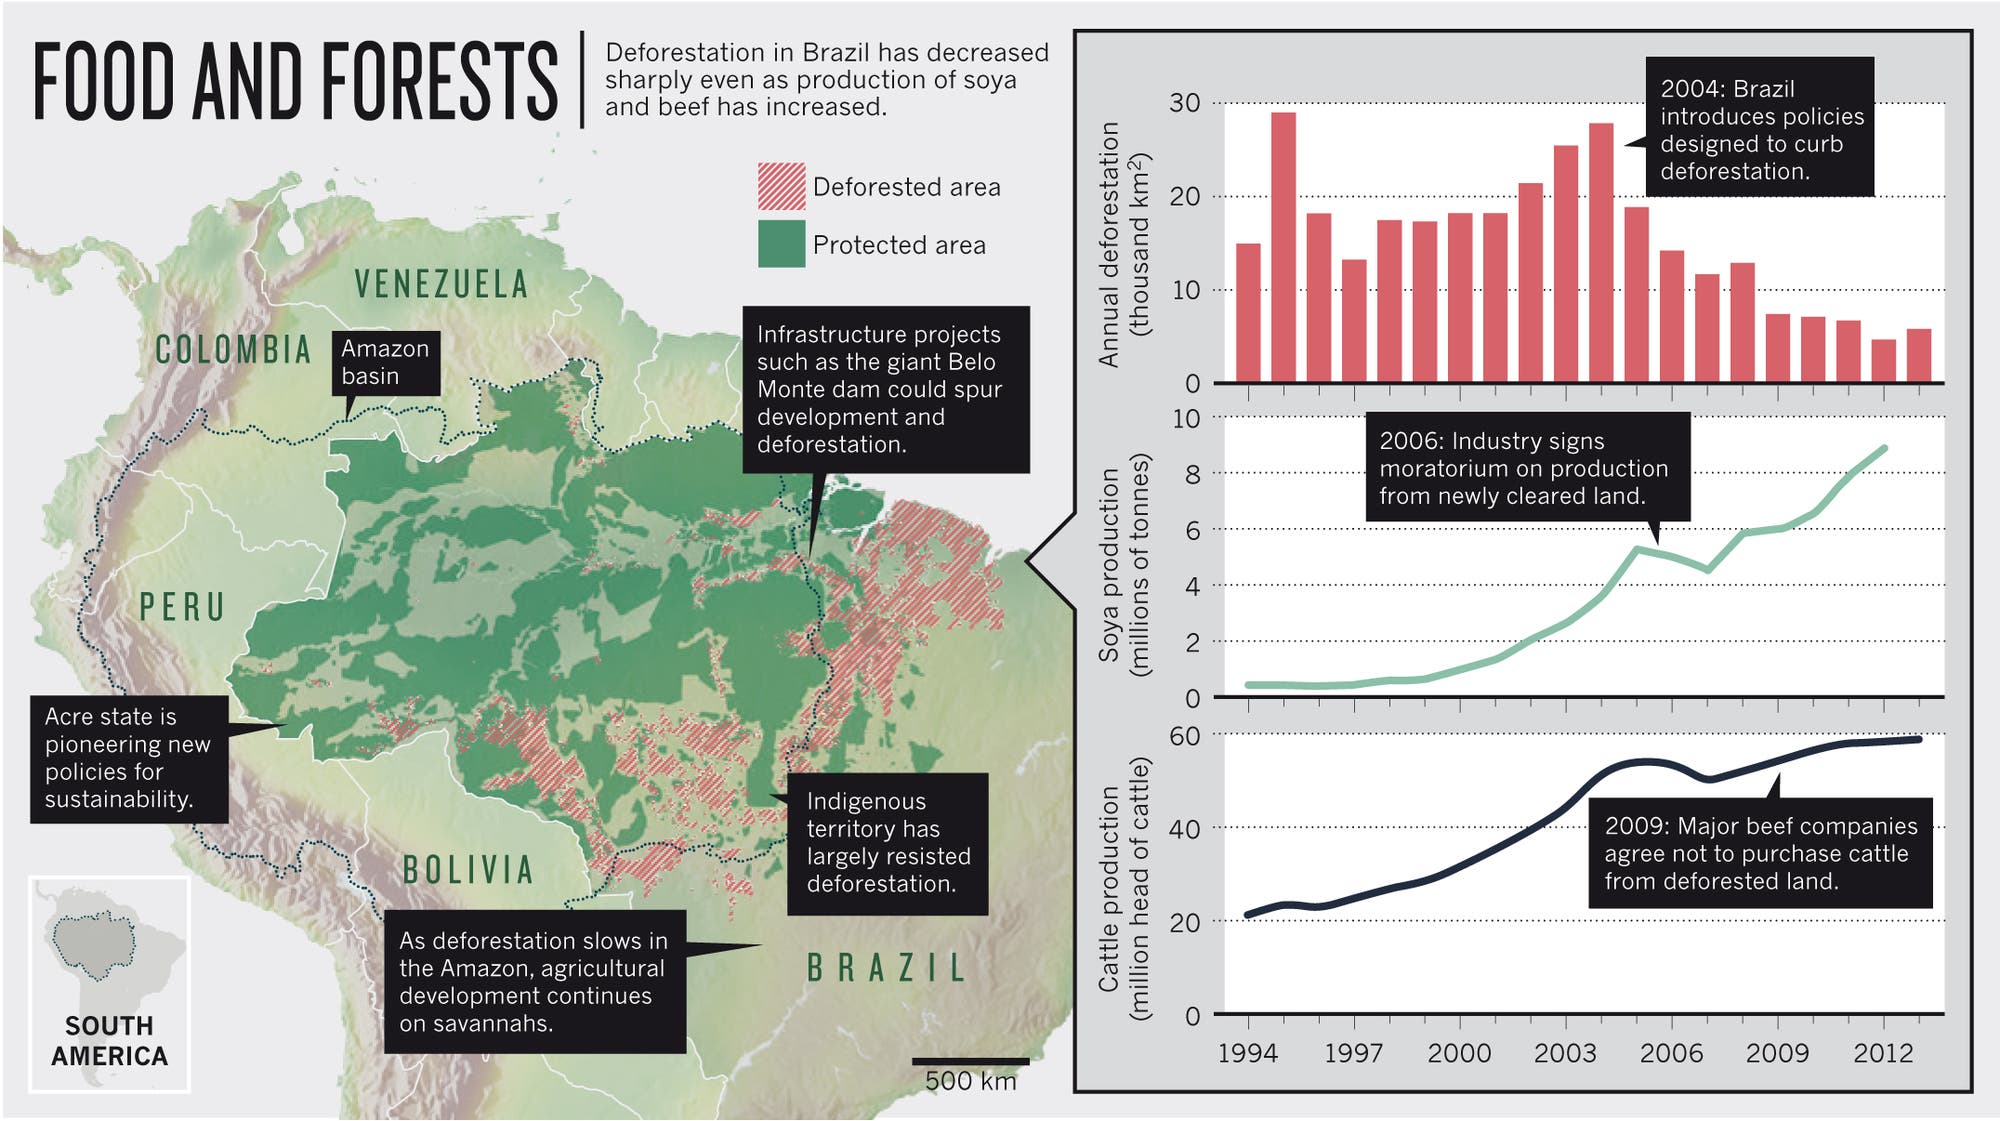 Die Karte zeigt deutlich, dass Indianerreservate und Naturschutzgebiete die Entwaldung deutlich bremsen können. Infrastrukturprojekte treiben sie dagegen richtig voran. Leider versuchen Bergbau- und Landwirtschaftslobbyisten den Schutzstatus von Reservaten parlamentarisch auszuhöhlen.